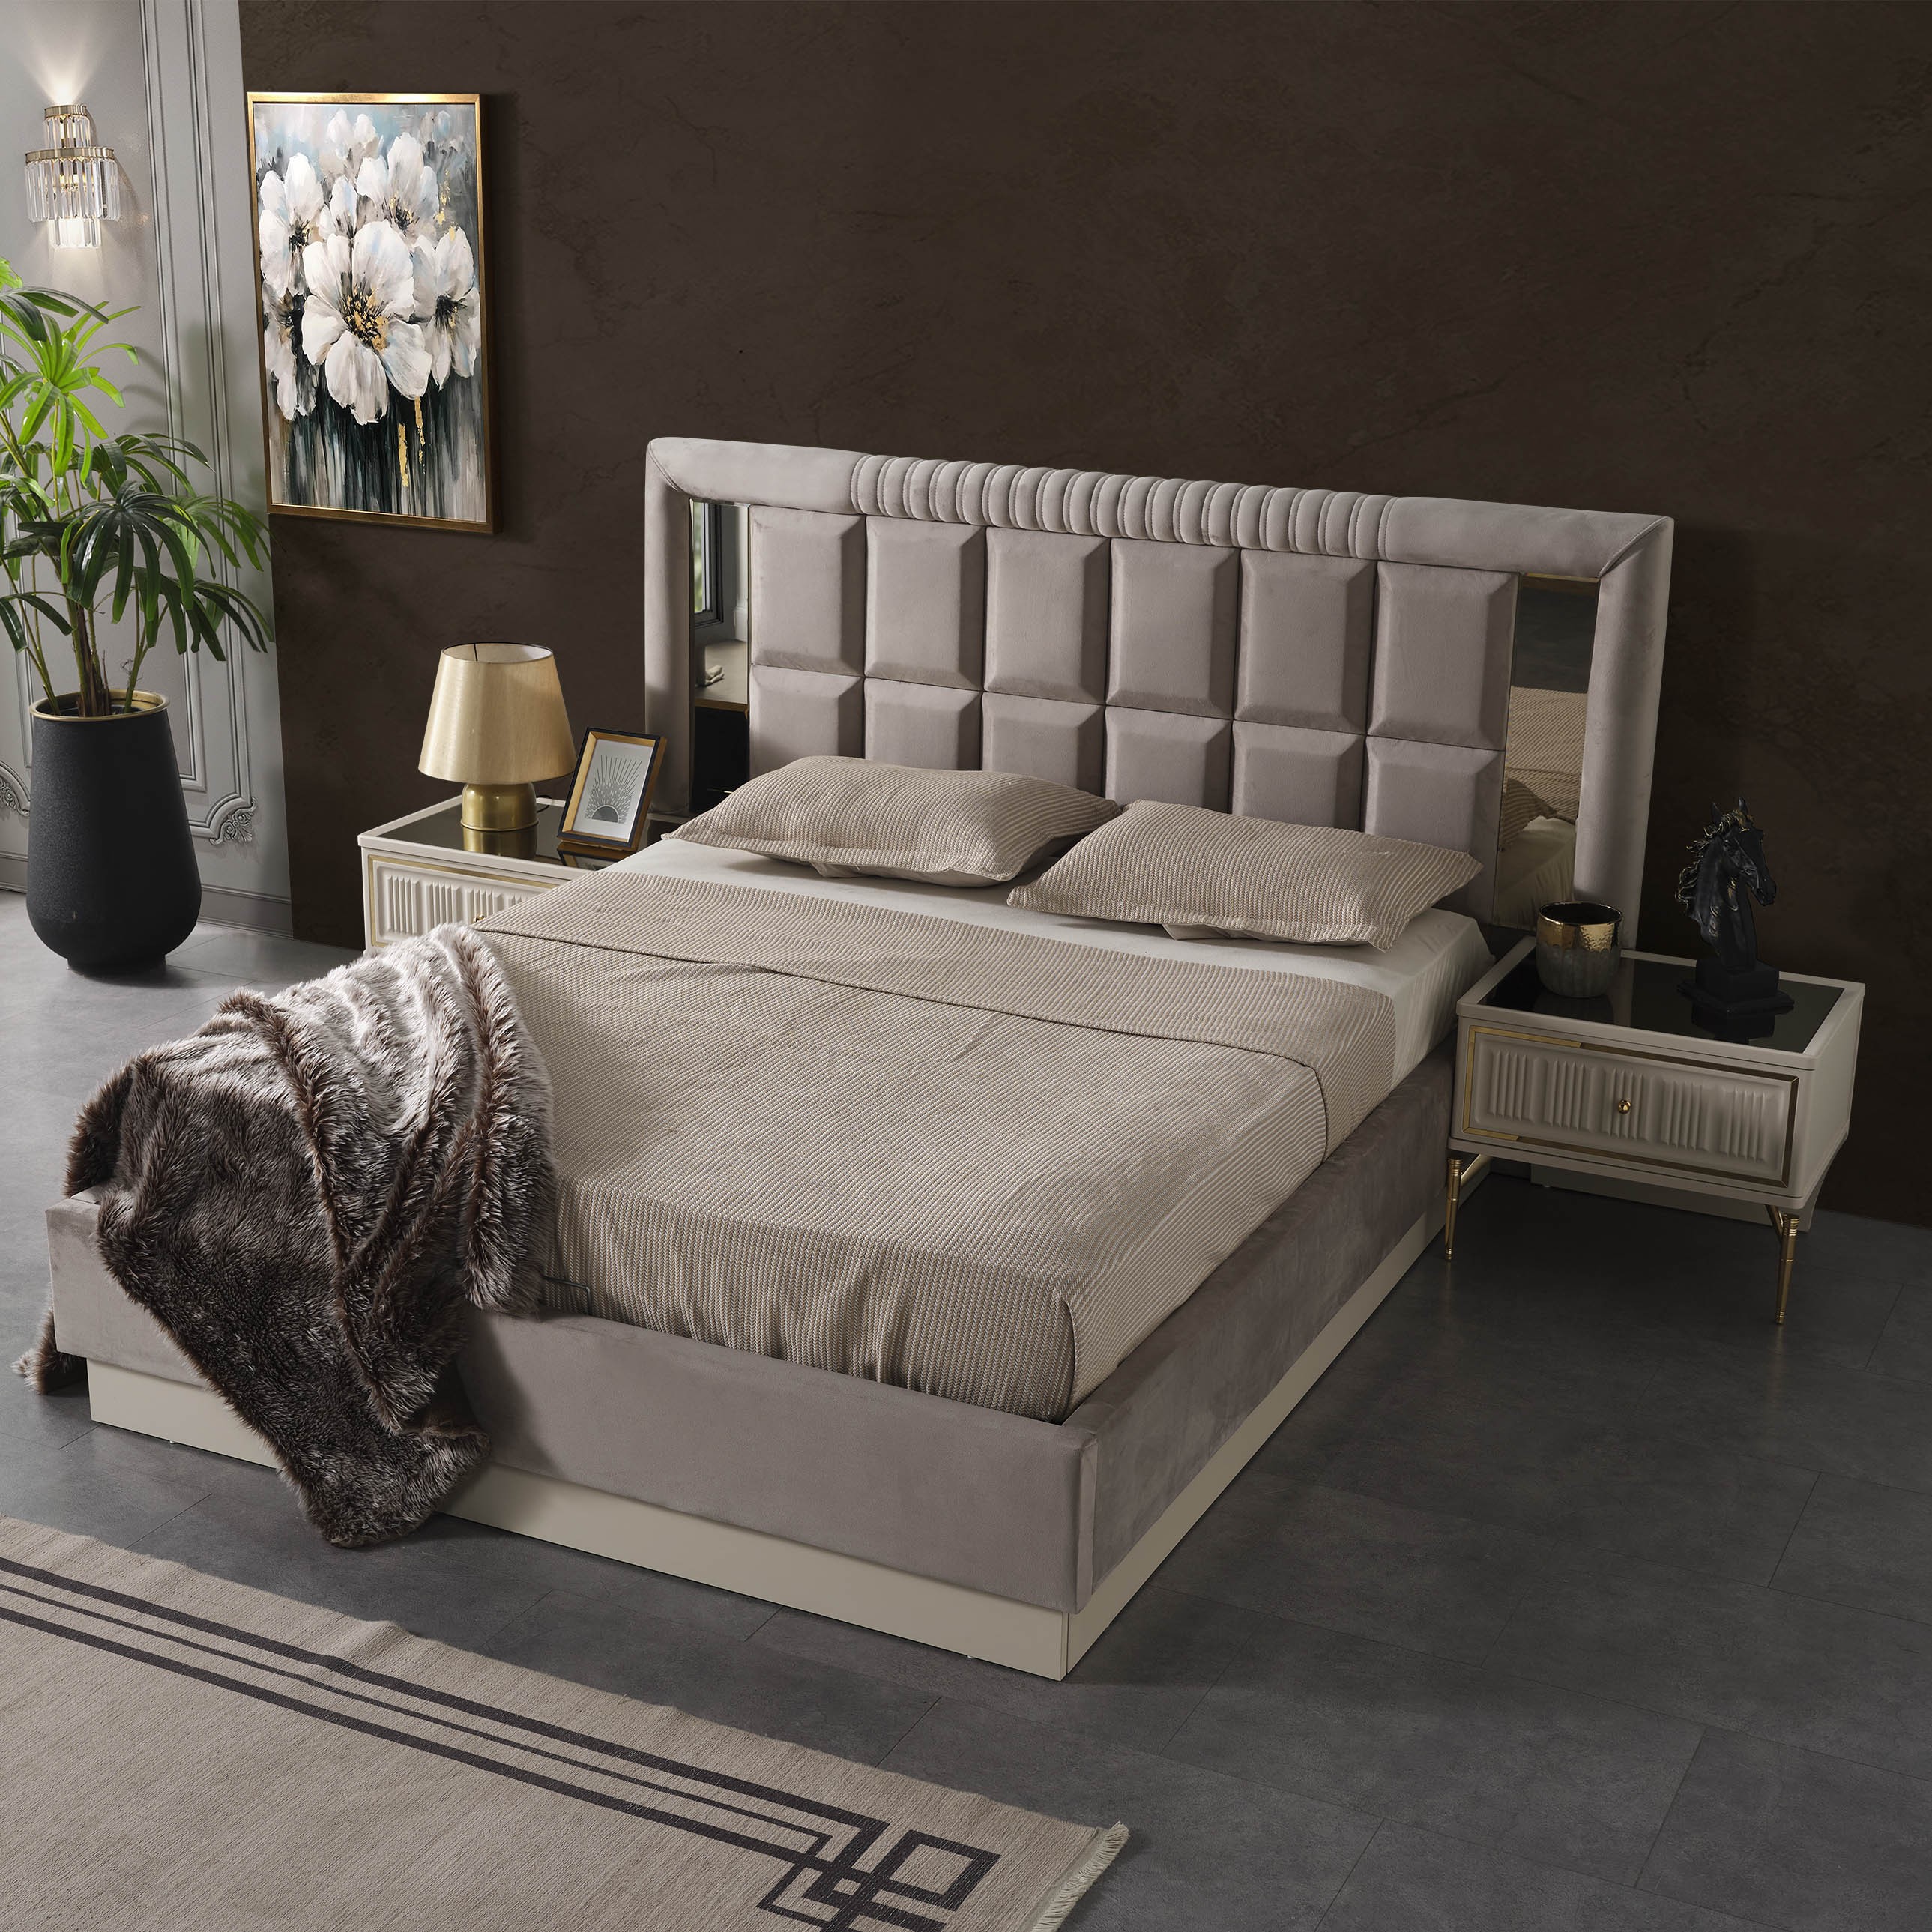 Anka Bed Without Storage 160x200 cm